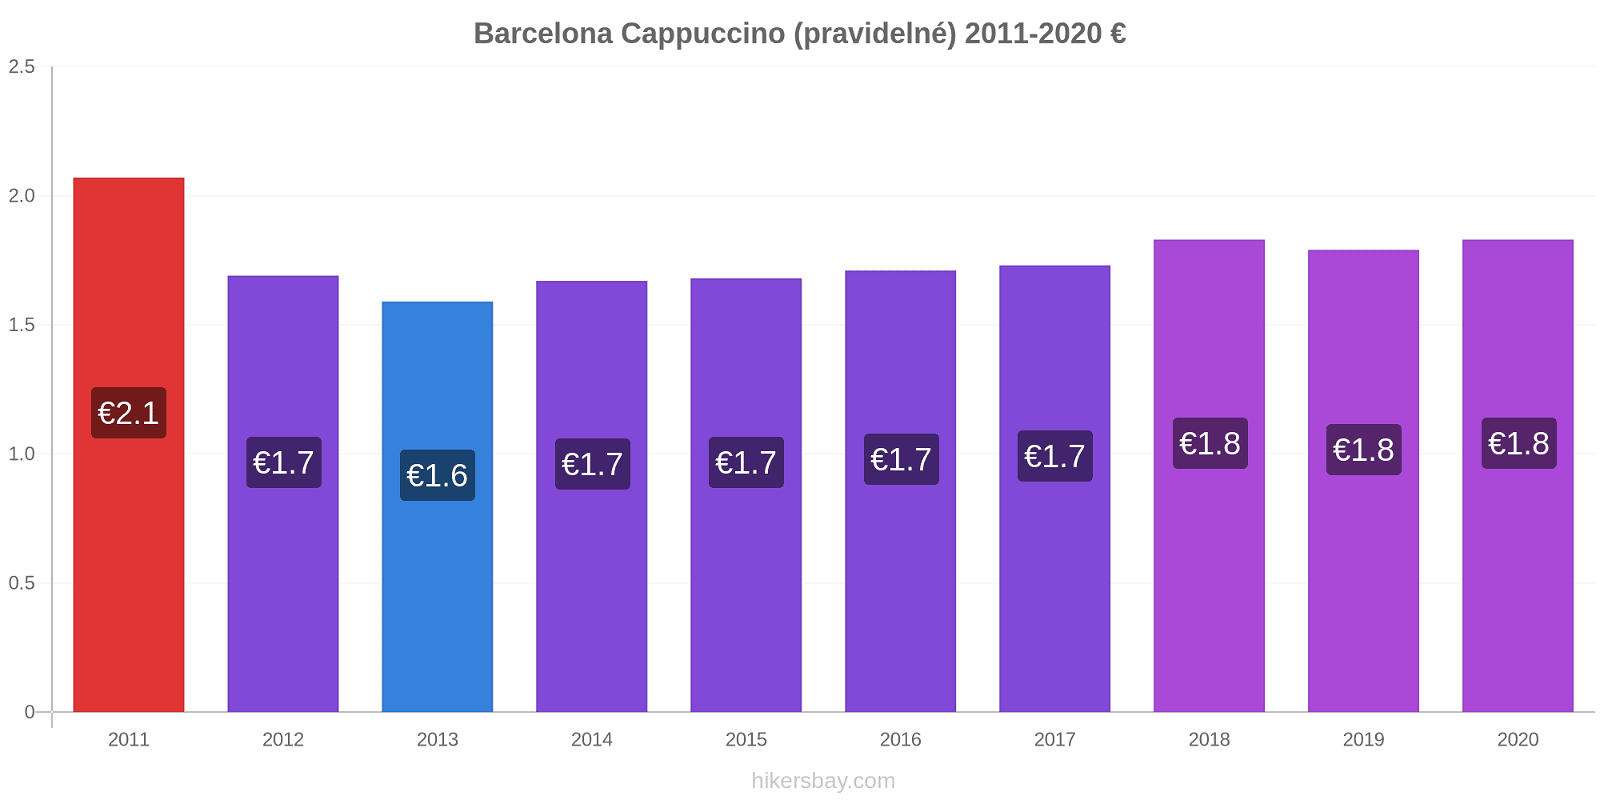 Barcelona změny cen Cappuccino (pravidelné) hikersbay.com